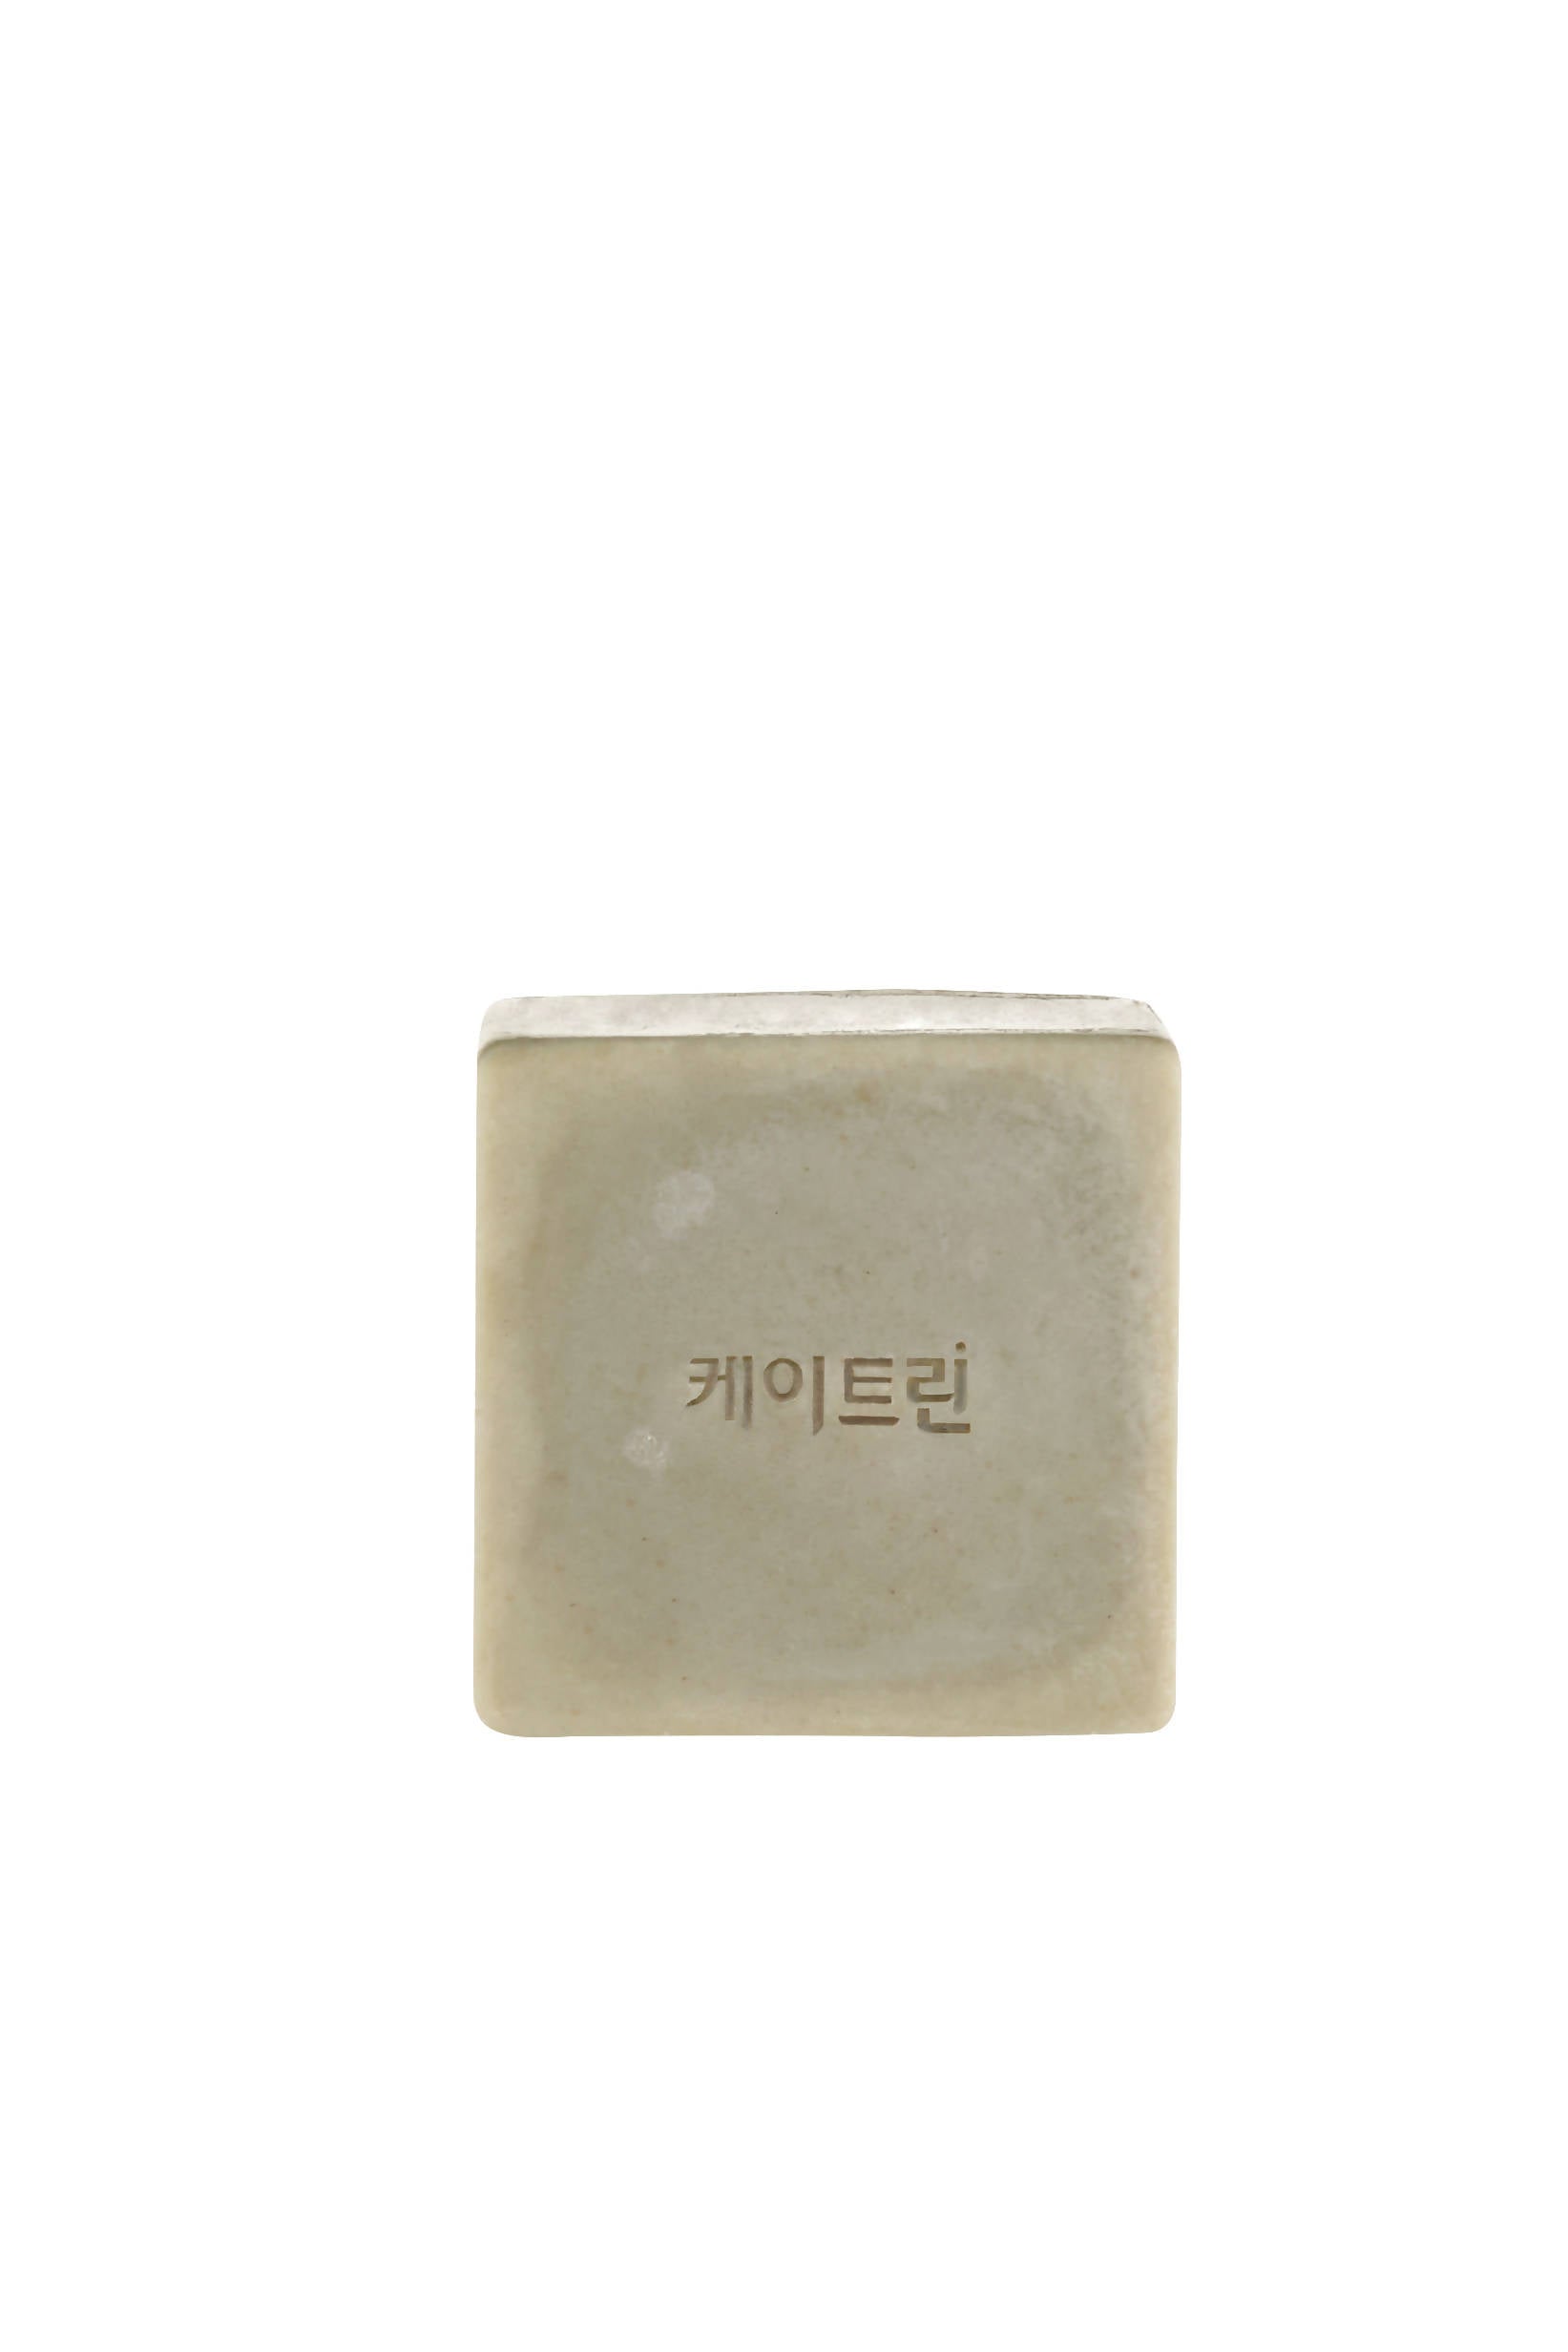 [Baek Ah-yul] Katrin Soap